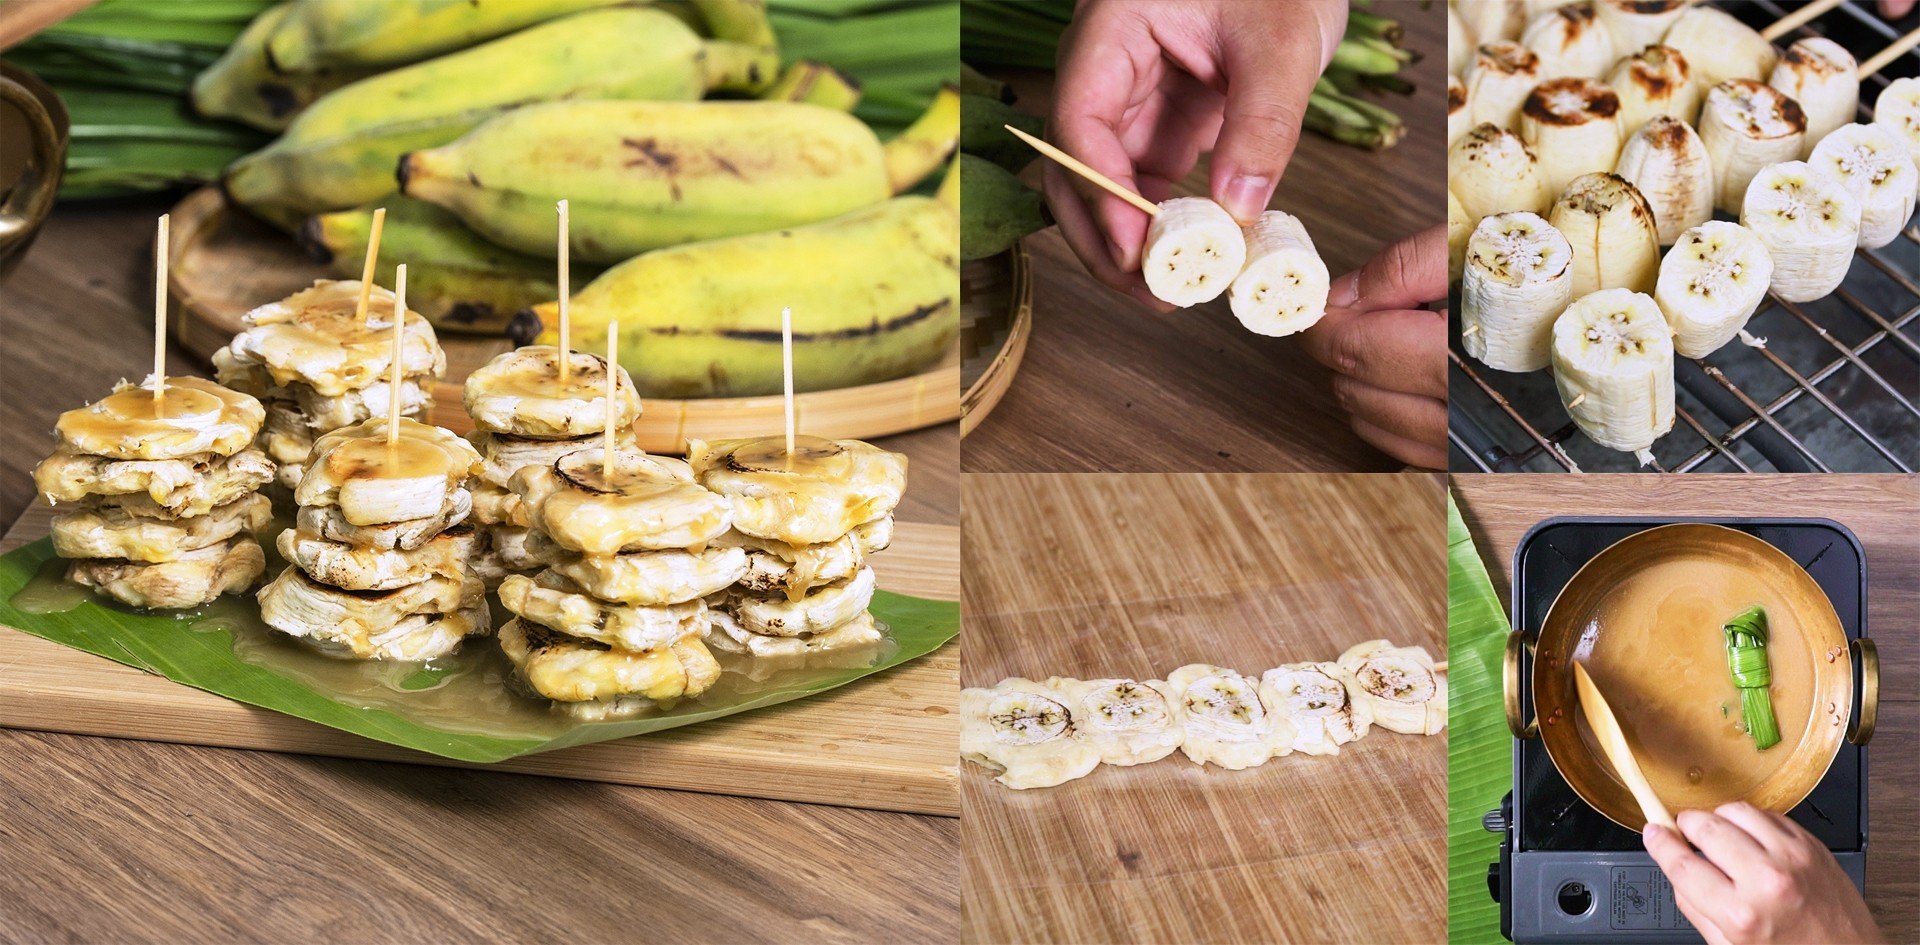 วิธีทำ “กล้วยทับน้ำกะทิ” เมนูขนมไทยยอดฮิต ถูกใจทุกเพศทุกวัย! เมนูอาหารว่าง